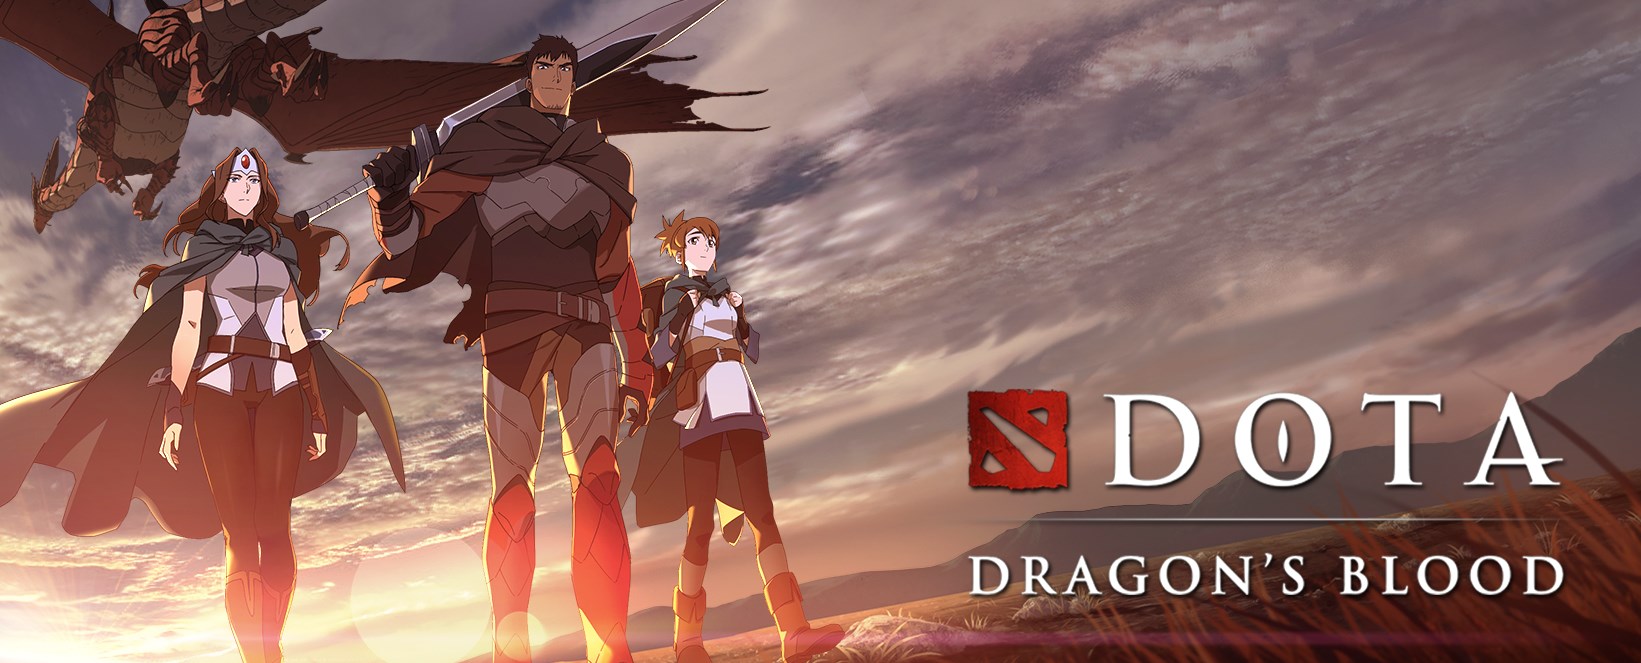 Netflix’in Dota animesi Dota: Dragon's Blood'dan yeni resmi fragman paylaşıldı